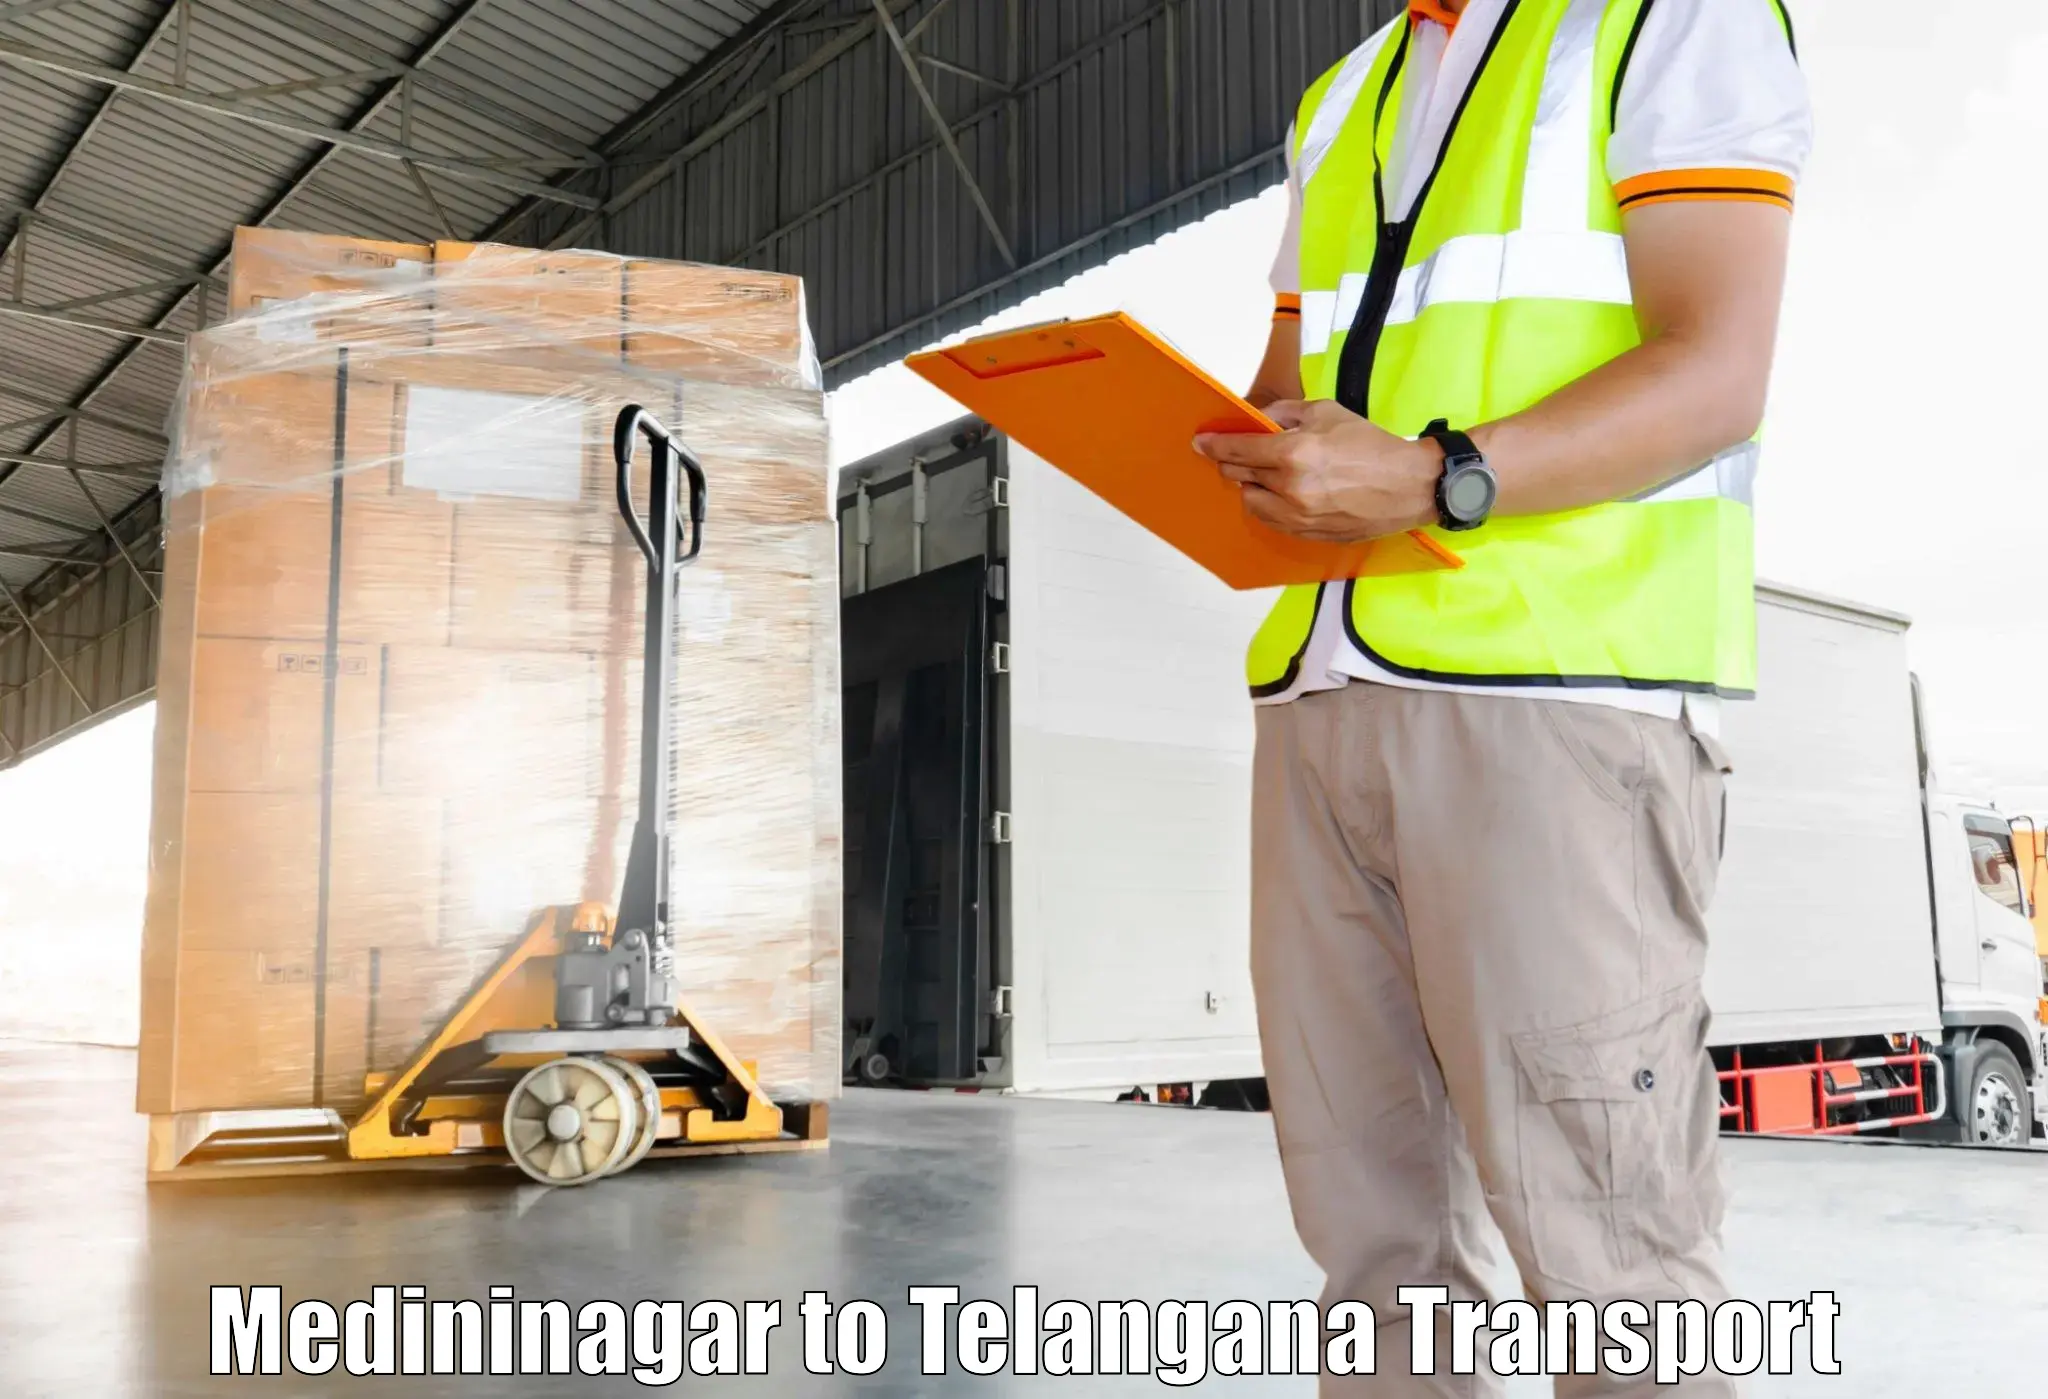 Vehicle courier services in Medininagar to Jadcherla